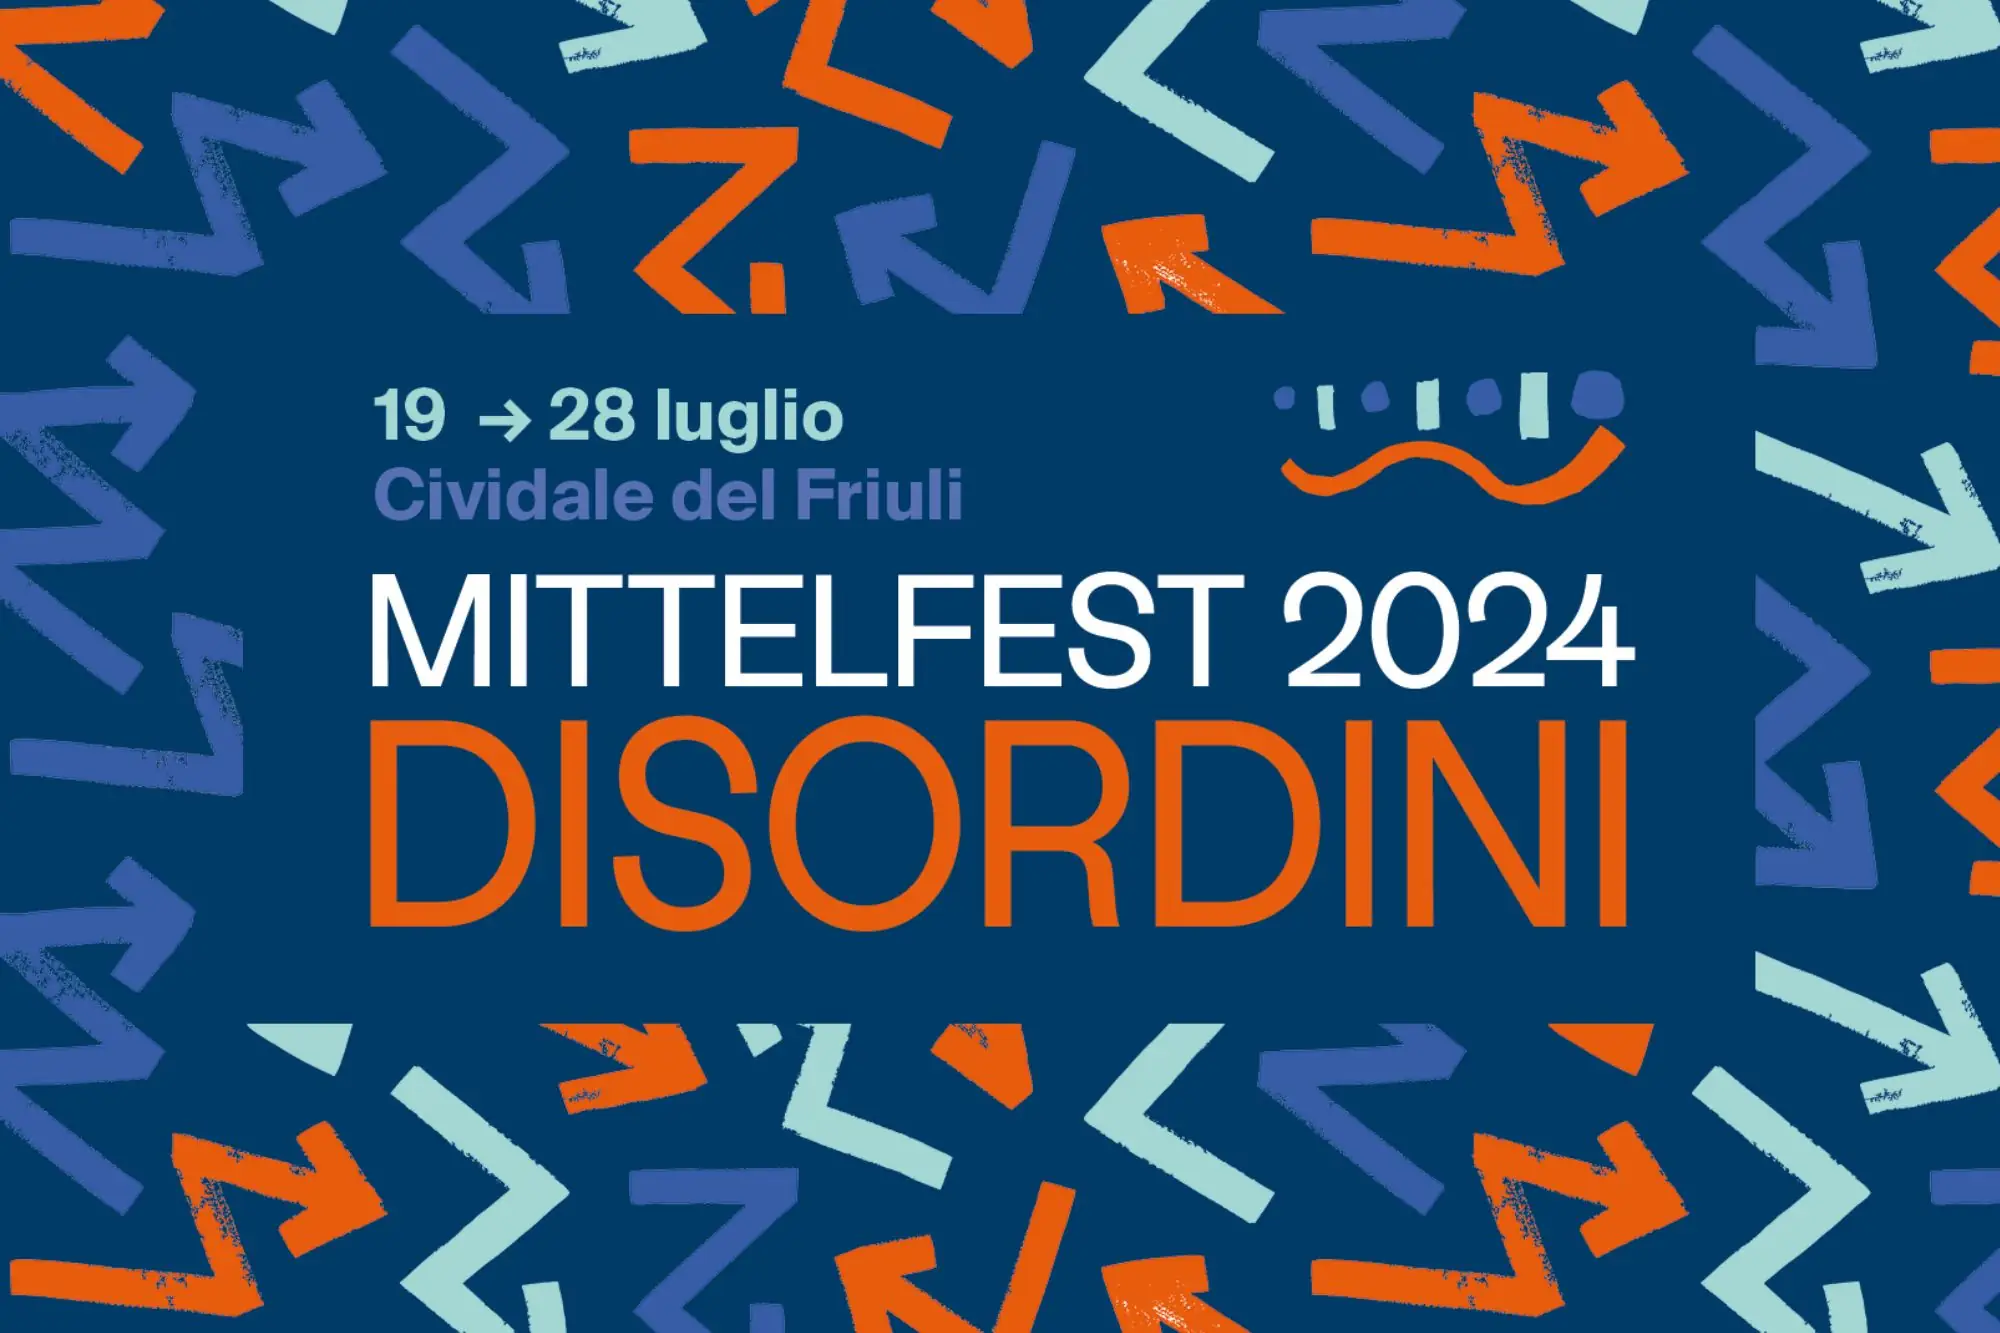 Mittelfest 2024: “Disordini” Cividale del Friuli